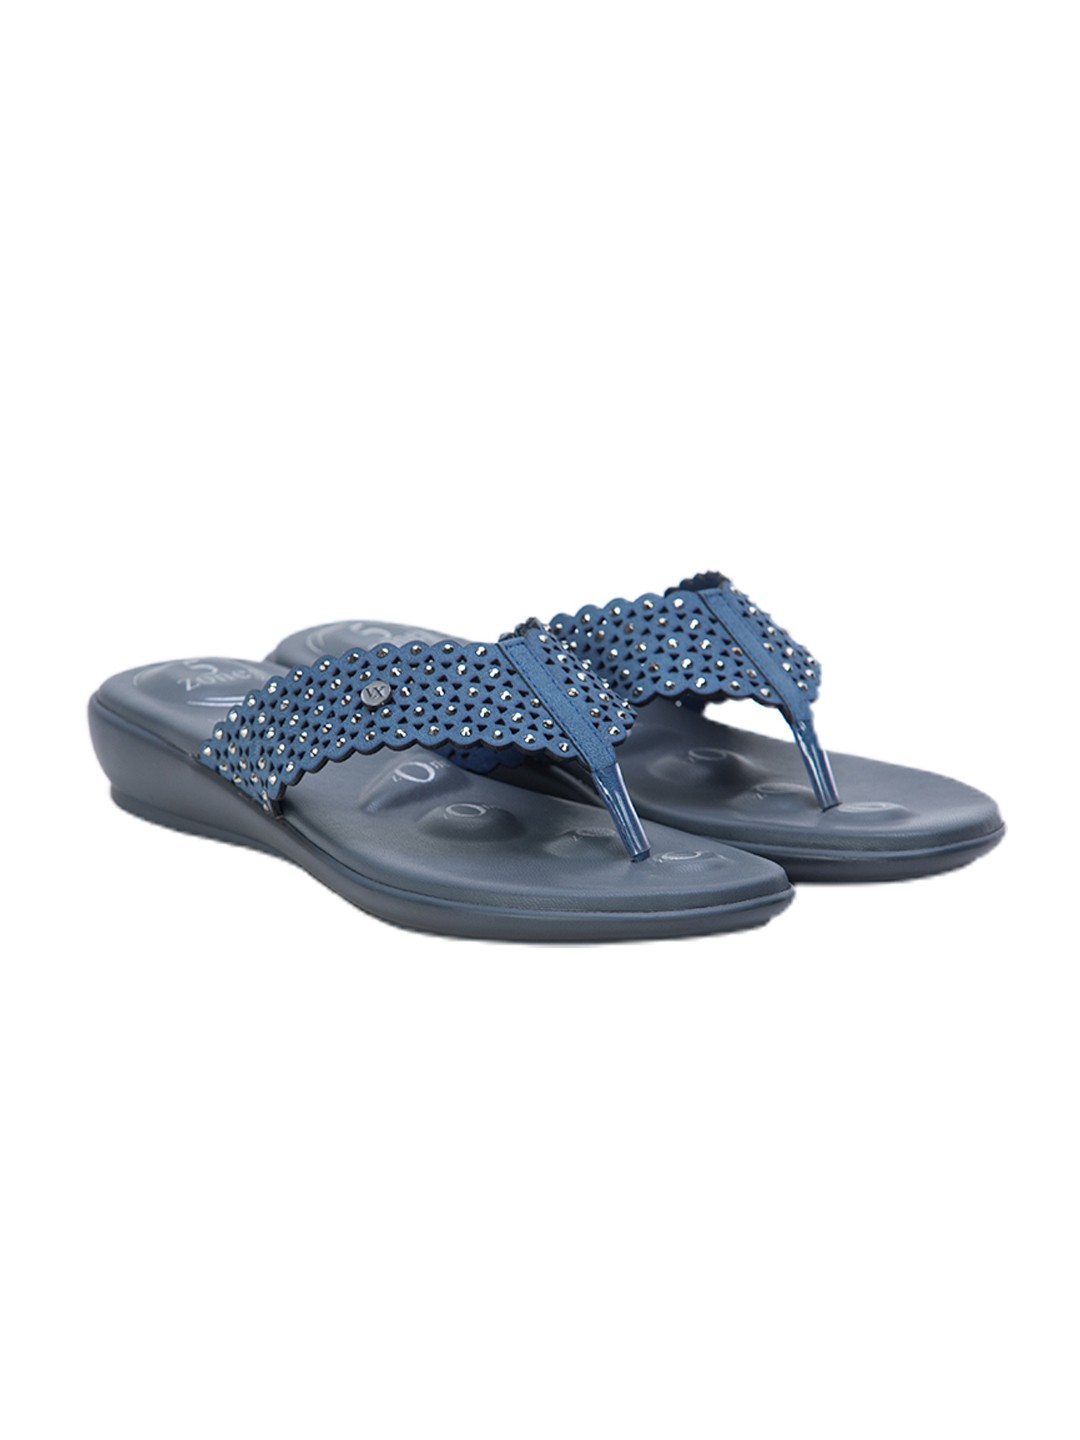 Buy Von Wellx Germany Comfort Gleam Blue Slippers Online in Thane